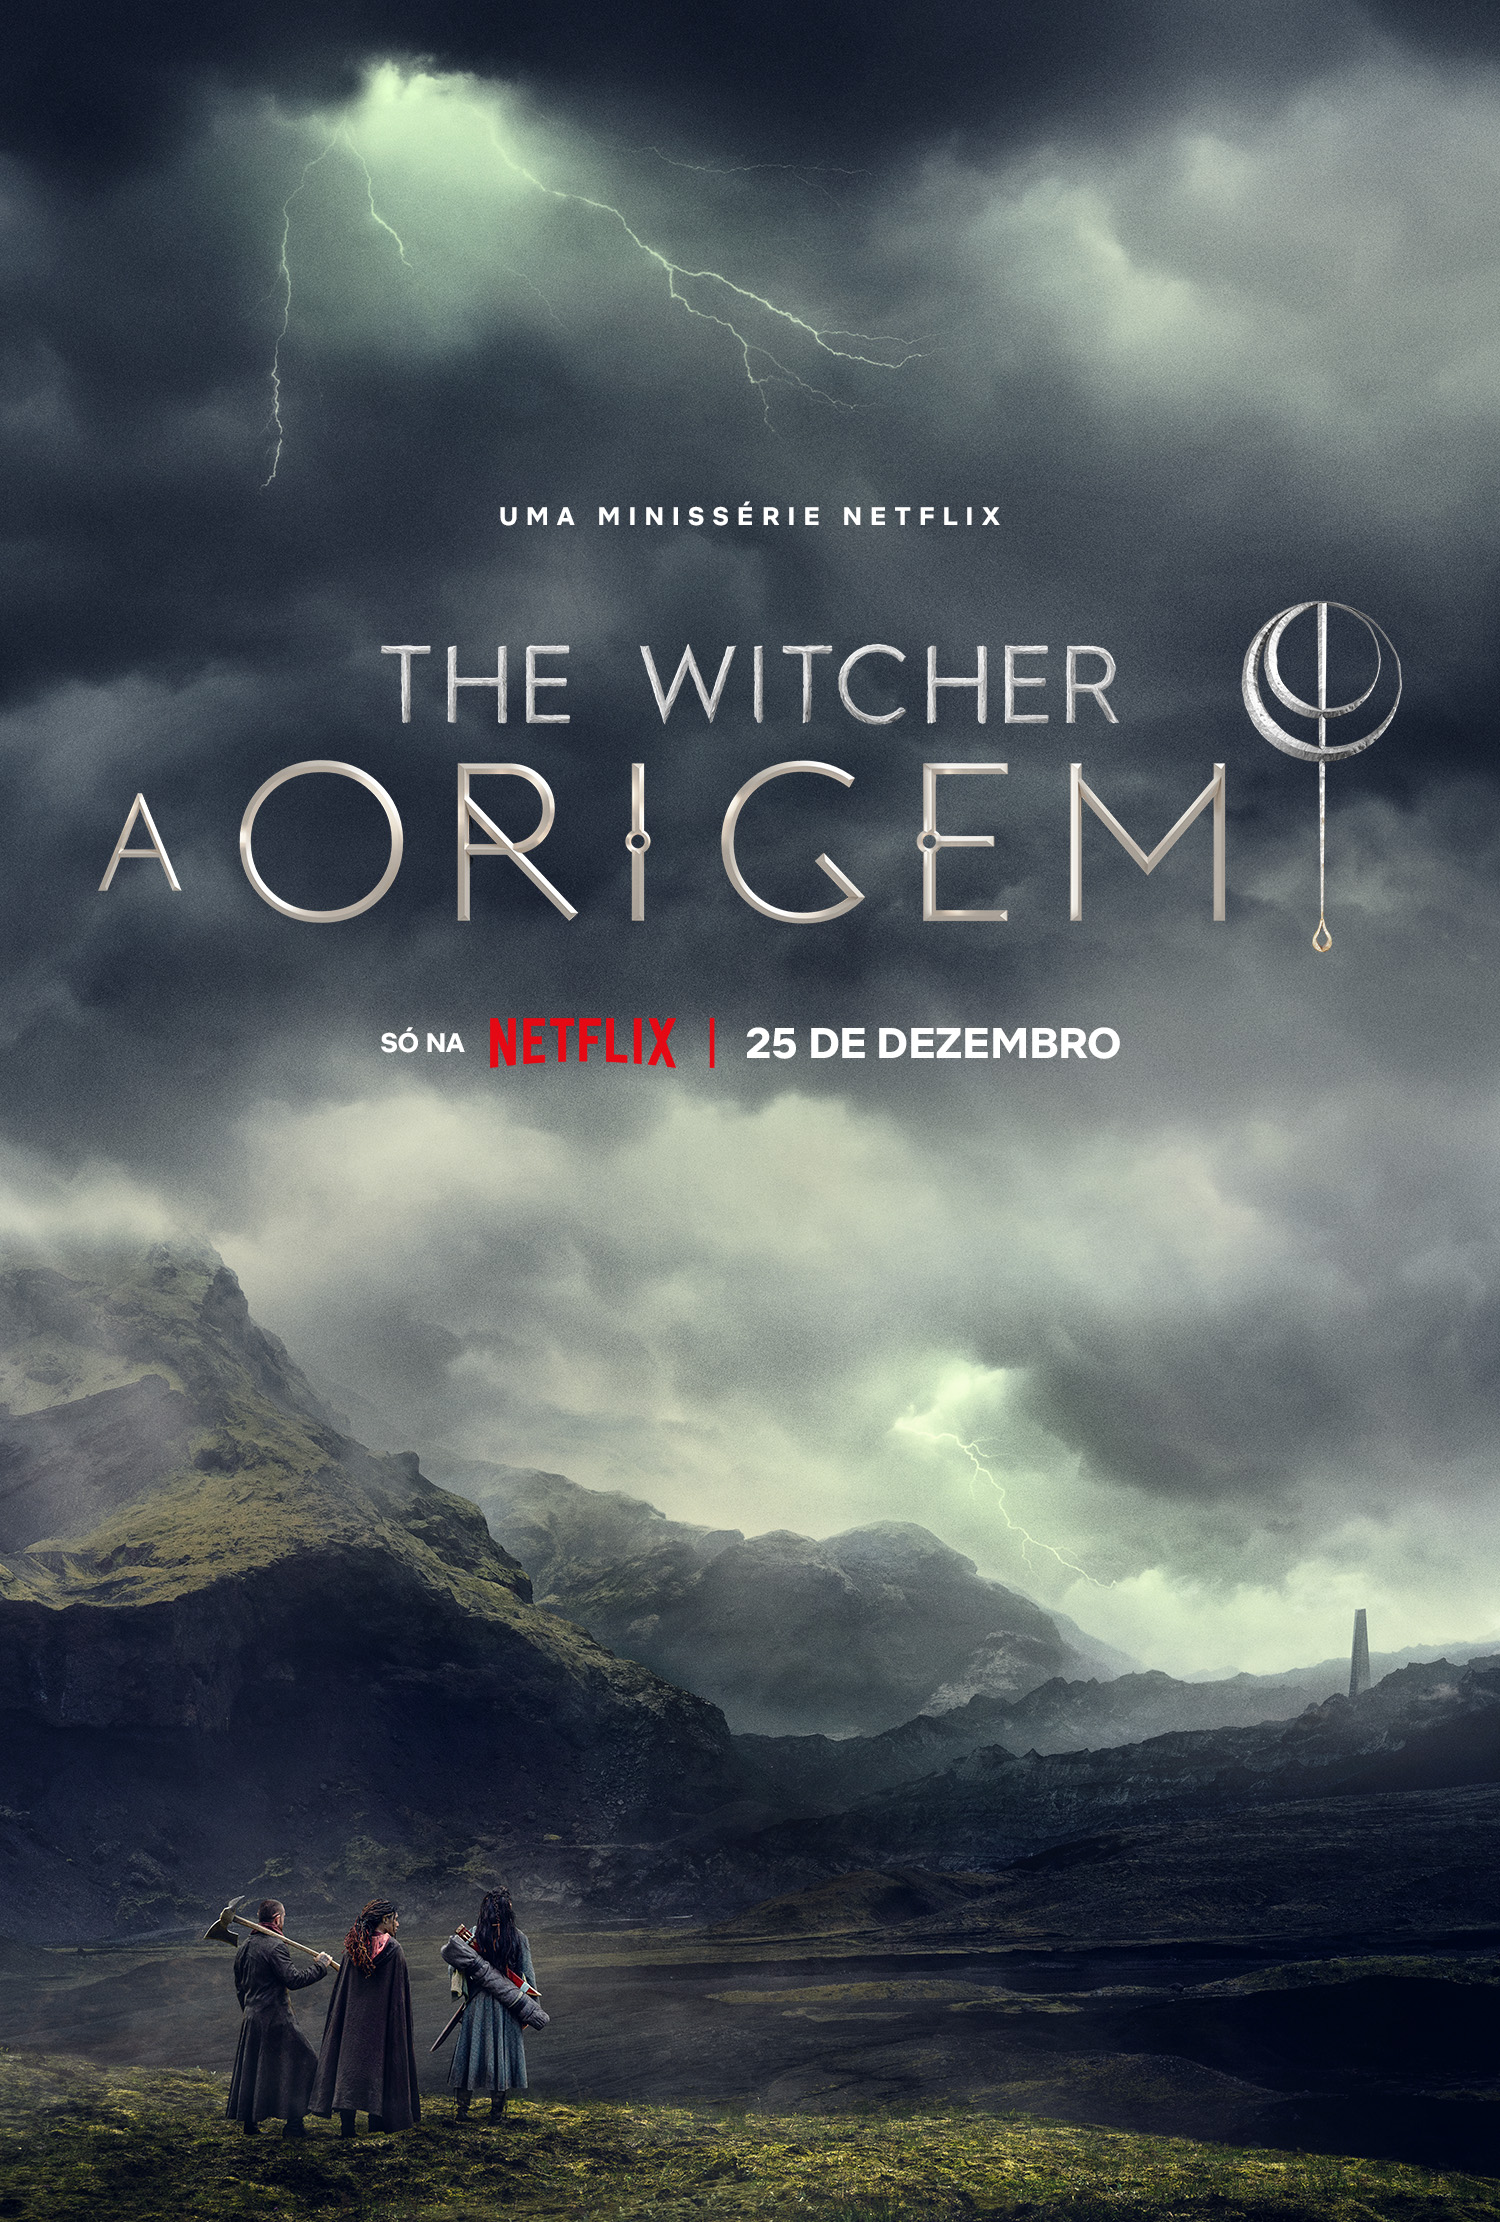 "The Witcher: A Origem": tudo que sabemos sobre a série nova da Netflix